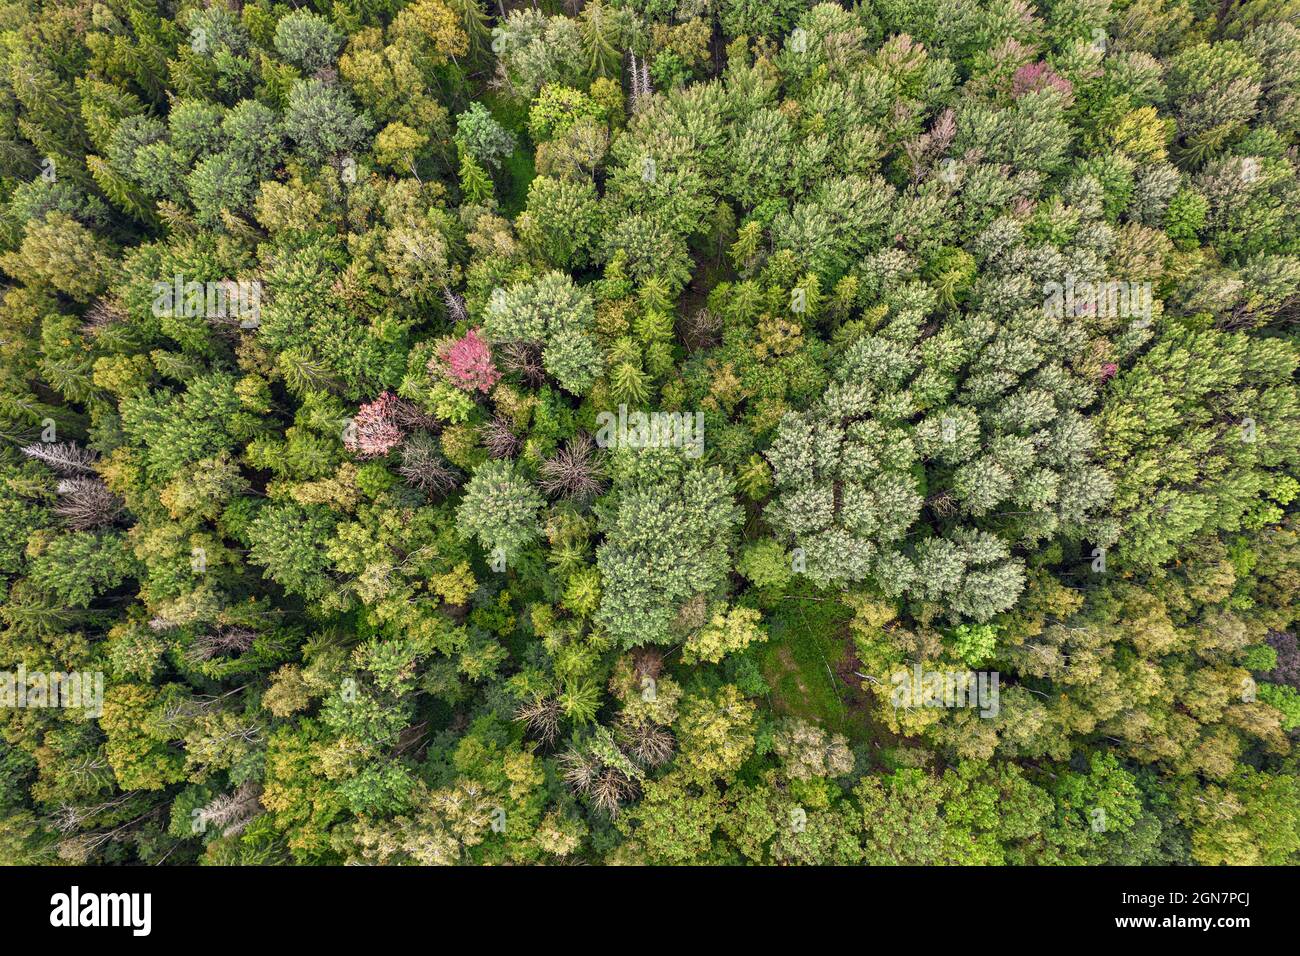 Direkt über der Luftdrohne im Vollformat Aufnahme von gemischtem Blattholz und Kiefernwald in verschiedenen erstaunlichen grünen Farben mit schöner Textur. Vogelperspektive auf hellgrau-grün-gelb-roten Herbstbäumen Stockfoto